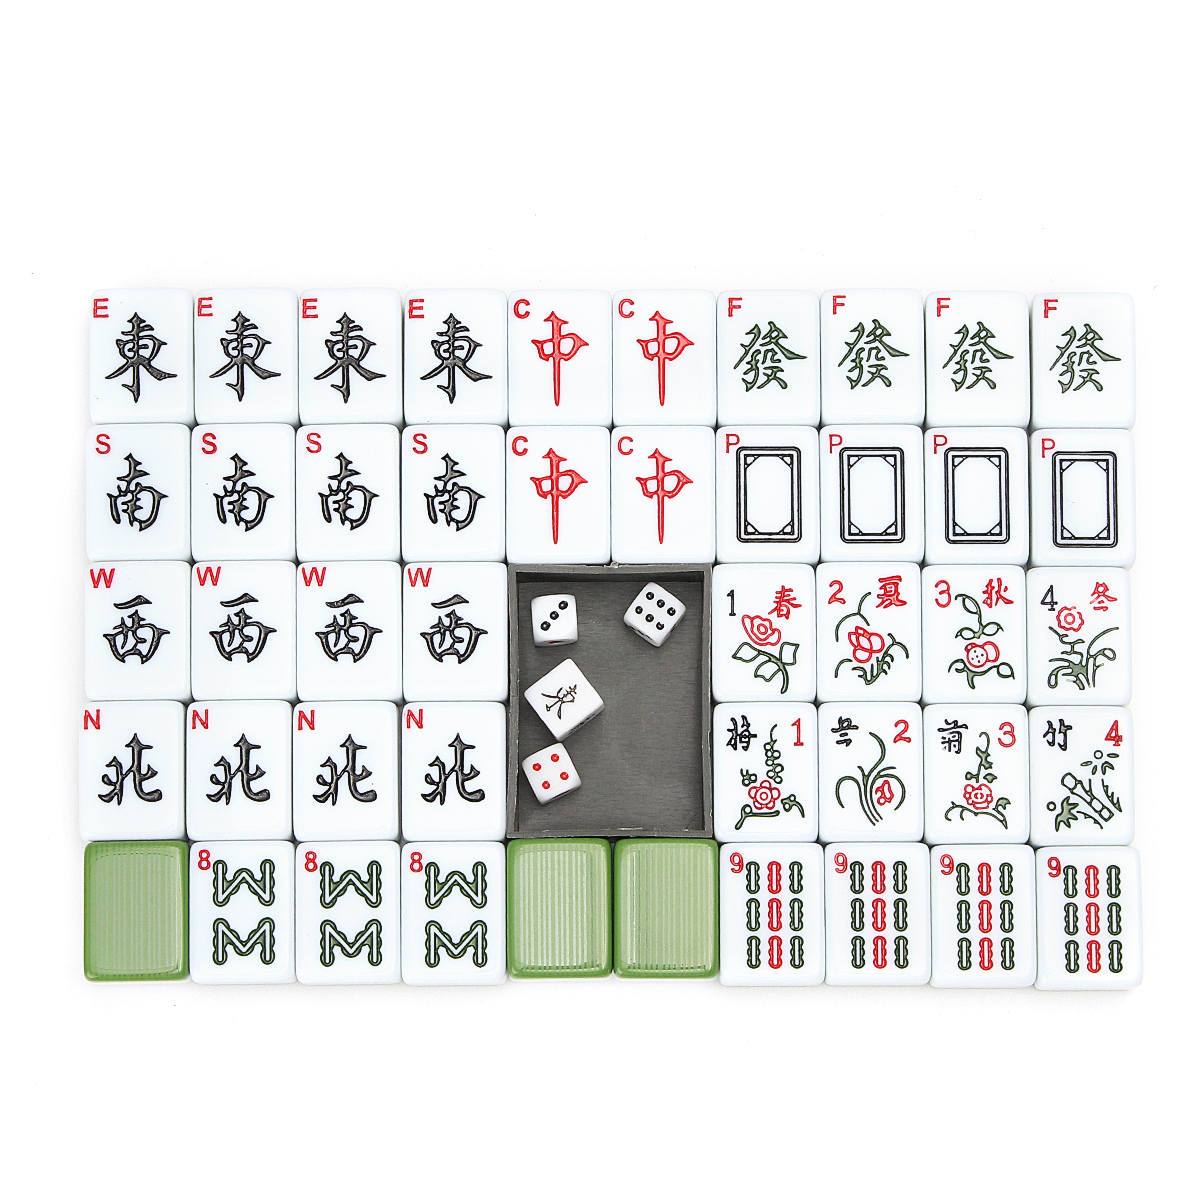 Portable-Vintage-Collection-Chinese-Mahjong-Rare-Game-144-Tiles-Mah-Jong-Set-1706671-4